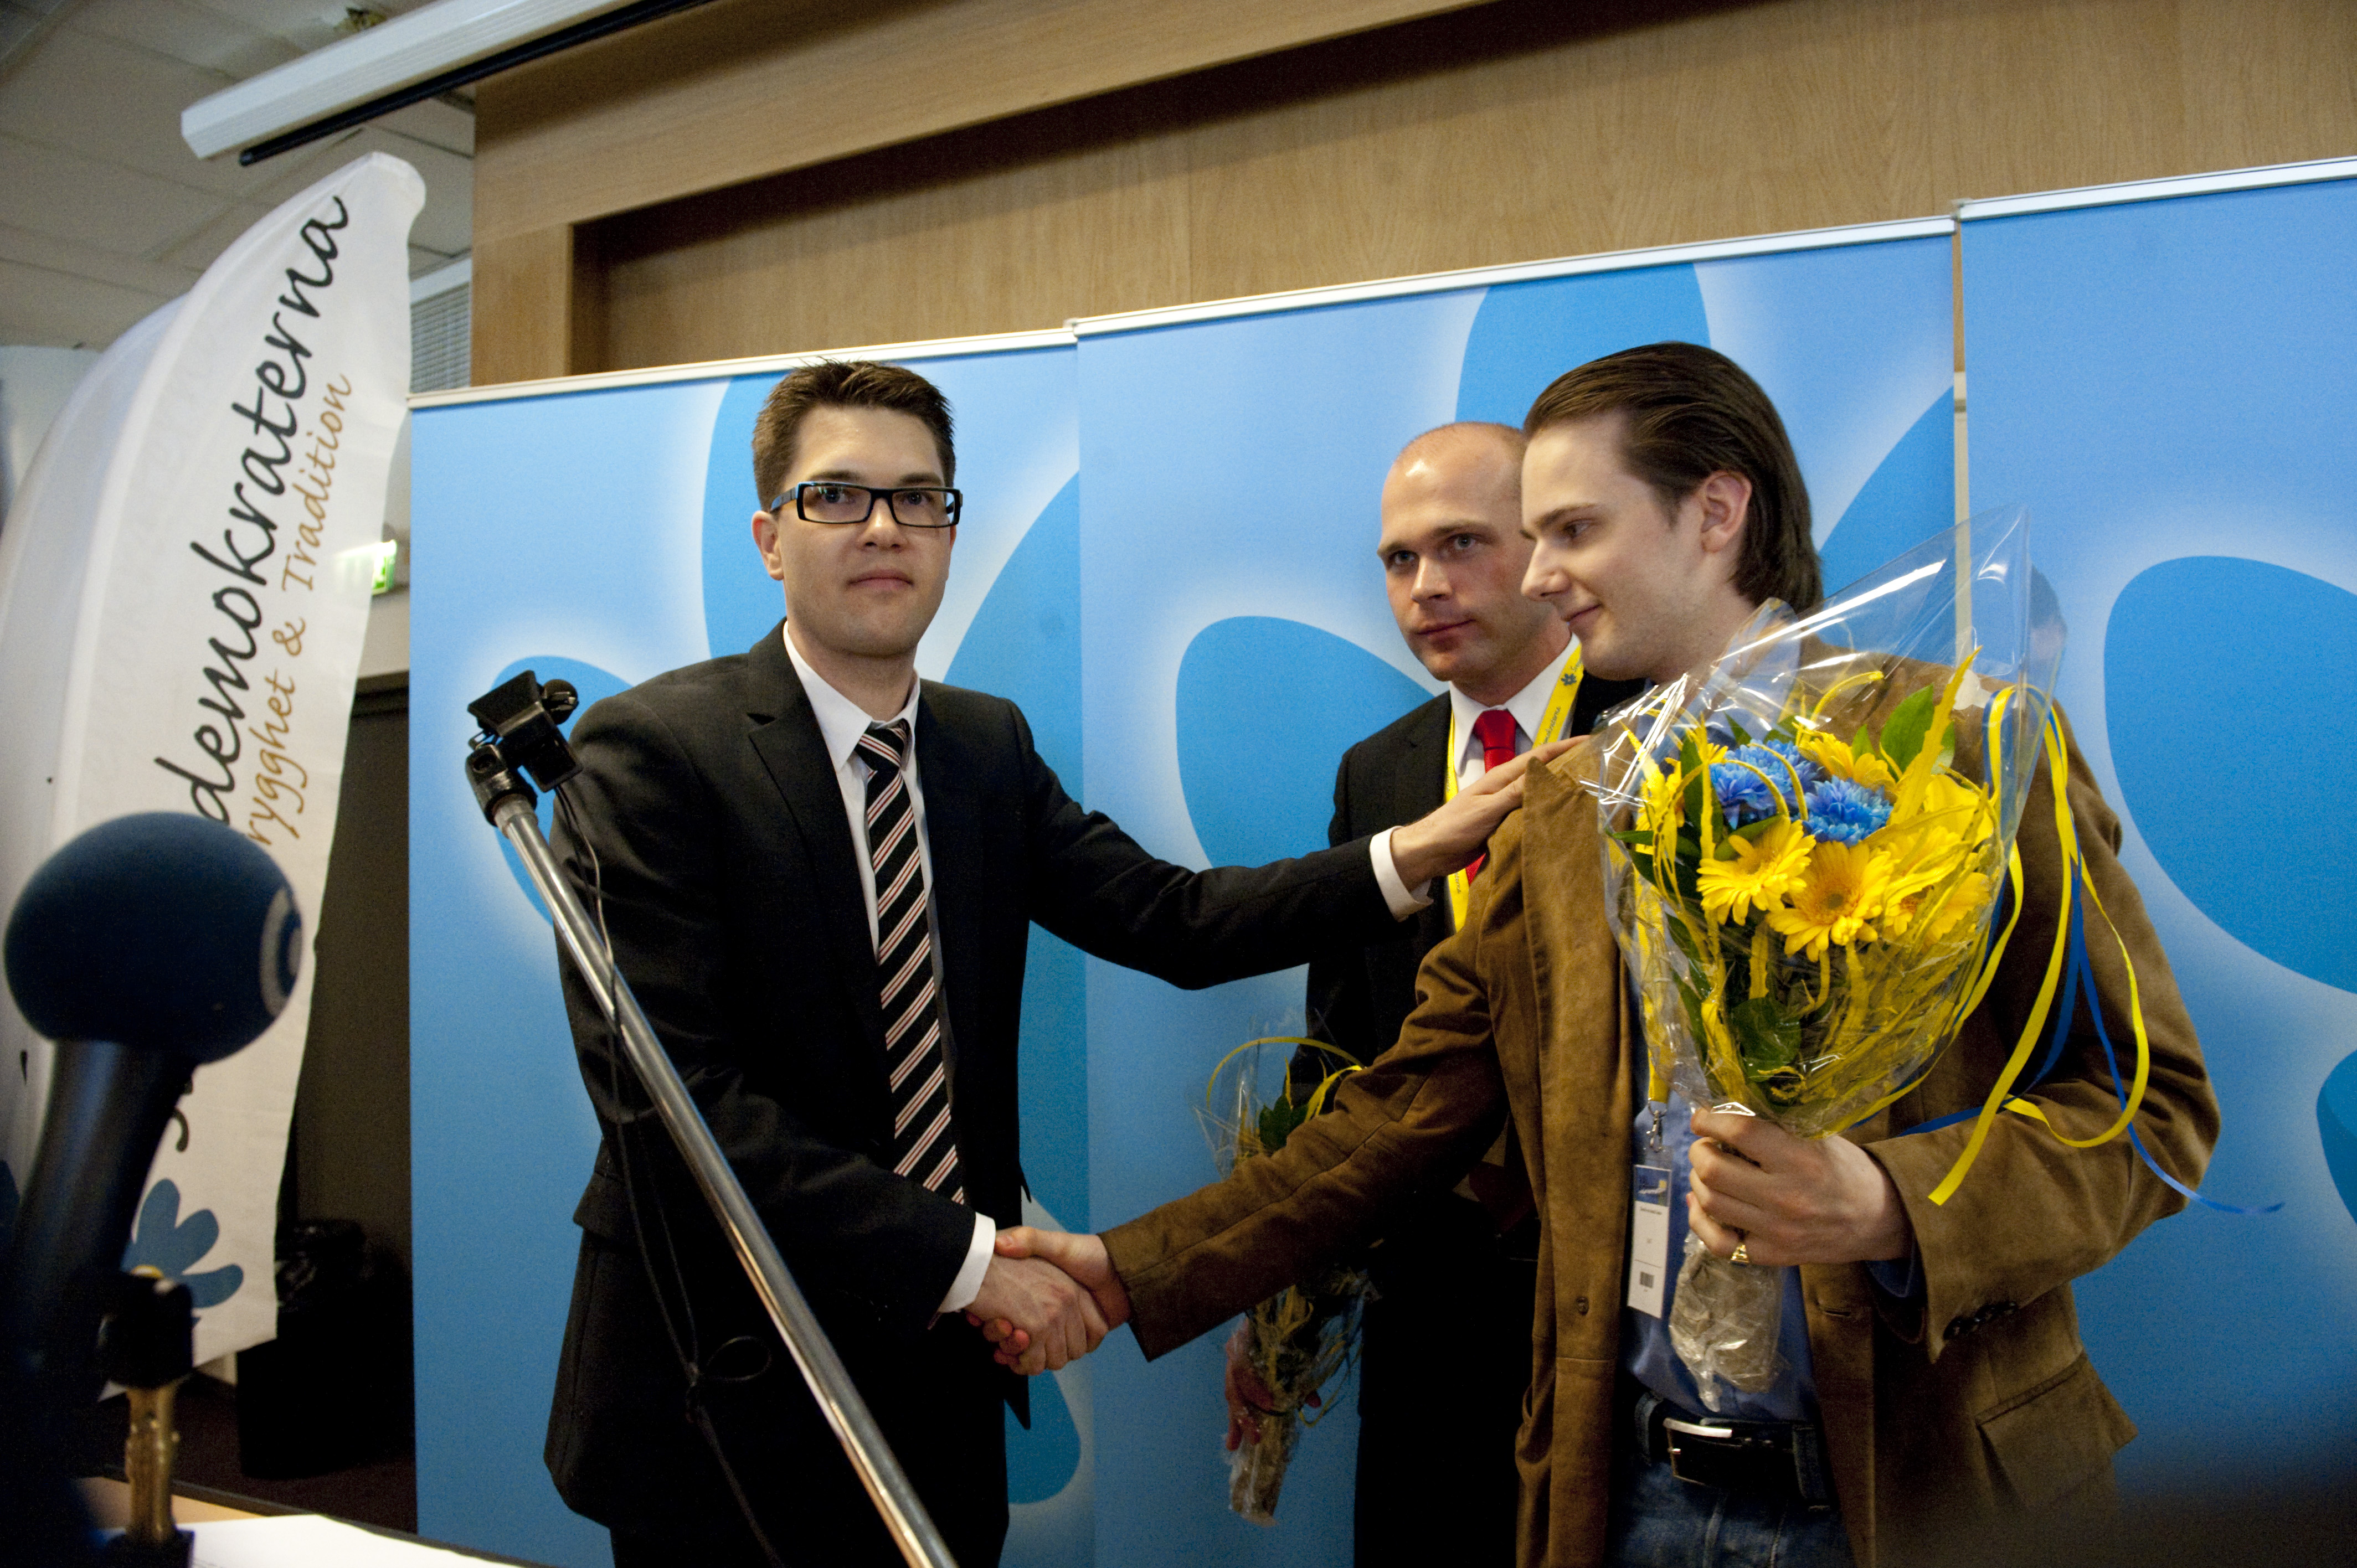 Malmö, Hakkors, Sverigedemokraterna, David von Arnold Antoni, Attack, Brott och straff, Riksdagsvalet 2010